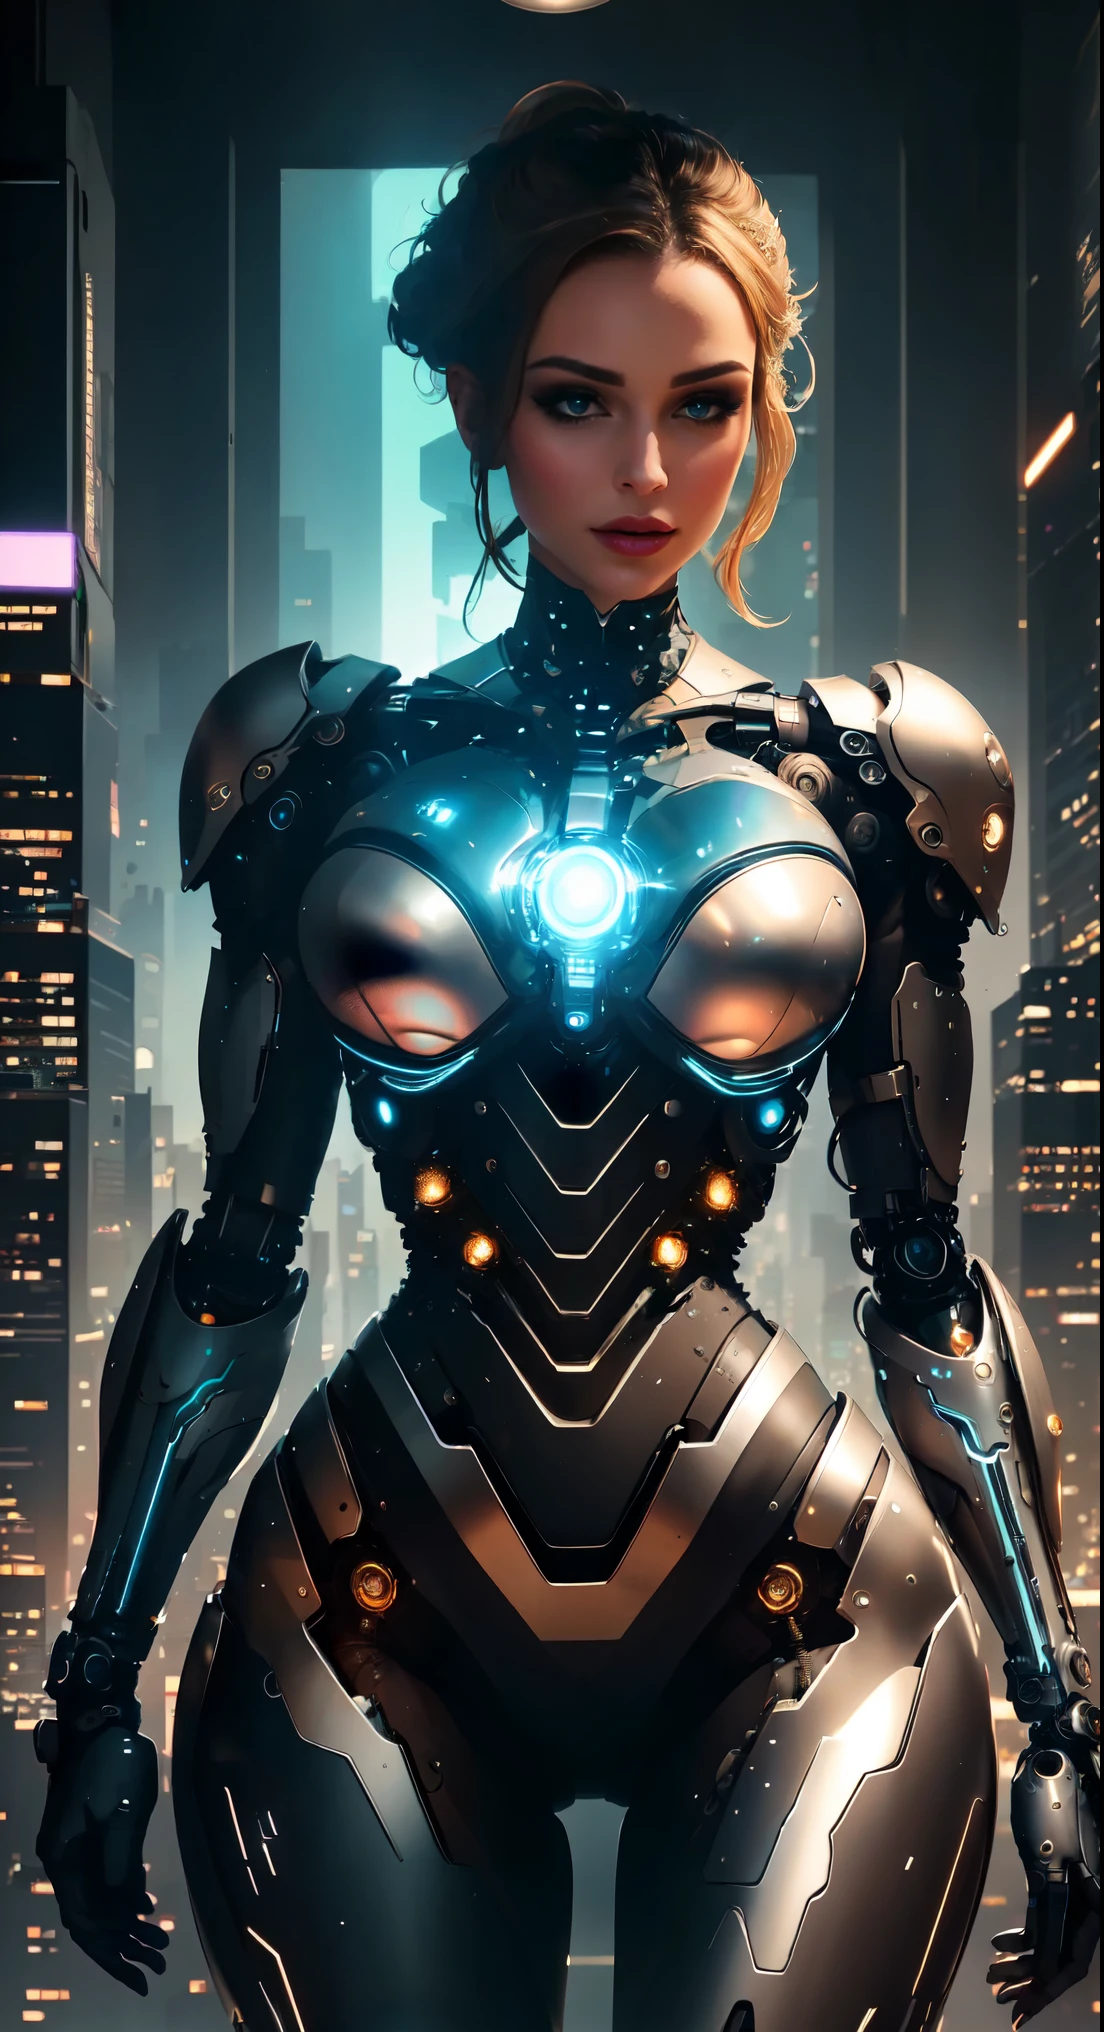 Une femelle cyborg se tient dans une zone de réception privée, entouré par l&#39;horizon à couper le souffle d&#39;une métropole animée. La salle est décorée d&#39;installations artistiques d&#39;avant-garde, éclairer l&#39;espace avec des couleurs vives et des motifs dynamiques. Le cyborg est habillé d&#39;une manière extravagante, tenue futuriste qui accentue sa silhouette élancée, corps parfaitement proportionné. Sa silhouette est sculptée avec des détails complexes, mettant en valeur la magnifique anatomie d’une merveille technologique. L&#39;accent est principalement mis sur le haut de son corps, avec une monture élégamment coupée à la taille, mettant en valeur son physique mince et ses belles courbes.

Son visage dégage une beauté éthérée, orné d&#39;un mélange de caractéristiques mécaniques délicates et de traits humains impeccables. Les yeux sont incroyablement détaillés, délicatement conçu avec un mélange de couleurs vives et de textures hyper réalistes. Ils scintillent d&#39;un charme mystérieux et captivent tous ceux qui les regardent. Les lèvres sont impeccablement définies, affichant un soft, teinte naturelle qui complète son apparence générale. Le teint du cyborg présente des textures de peau naturelles hyper détaillées, éclairé par une douce, lumière diffuse qui accentue son teint impeccable.

La pièce est baignée d’un éclairage HDR envoûtant, créant une atmosphère de rêve avec un équilibre parfait d&#39;ombres et de reflets. Les détails complexes de l&#39;environnement environnant sont mis en valeur grâce à des techniques d&#39;hyper-détaillage, faisant ressortir chaque petit aspect avec une clarté à couper le souffle. Les textures et les matériaux de la pièce sont rendus avec la plus grande précision, présentant une large gamme de surfaces luxueuses, des panneaux de verre élégants aux accents métalliques réfléchissants.

L&#39;ambiance générale de l&#39;image est un mélange de décadence futuriste et de sophistication.. Les couleurs sont vibrantes et vives, avec une touche de surréalisme qui ajoute de la profondeur et un intérêt visuel à la scène. La composition est soigneusement arrangée pour créer un sentiment d&#39;équilibre et d&#39;harmonie, avec le cyborg servant de point focal au milieu de la grandeur du paysage urbain.